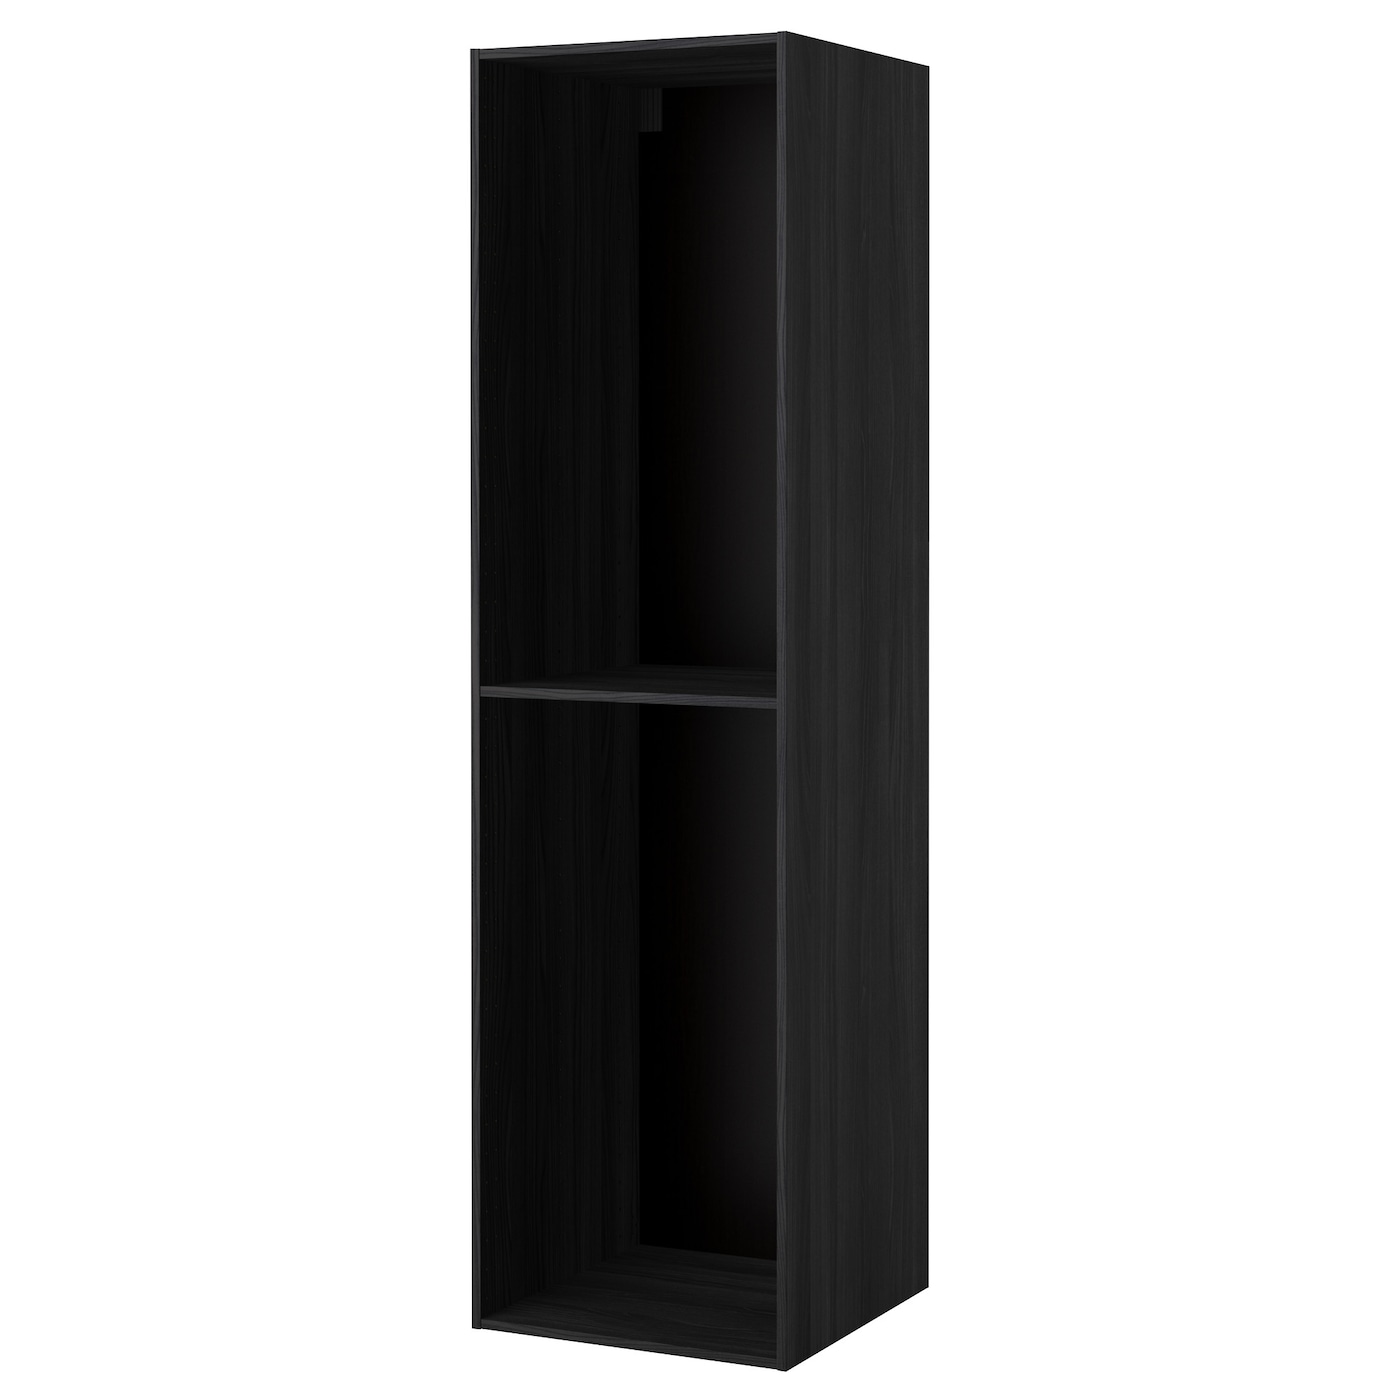 Каркас высокого шкафа - METOD IKEA/МЕТОД ИКЕА, 220х60 см, черный